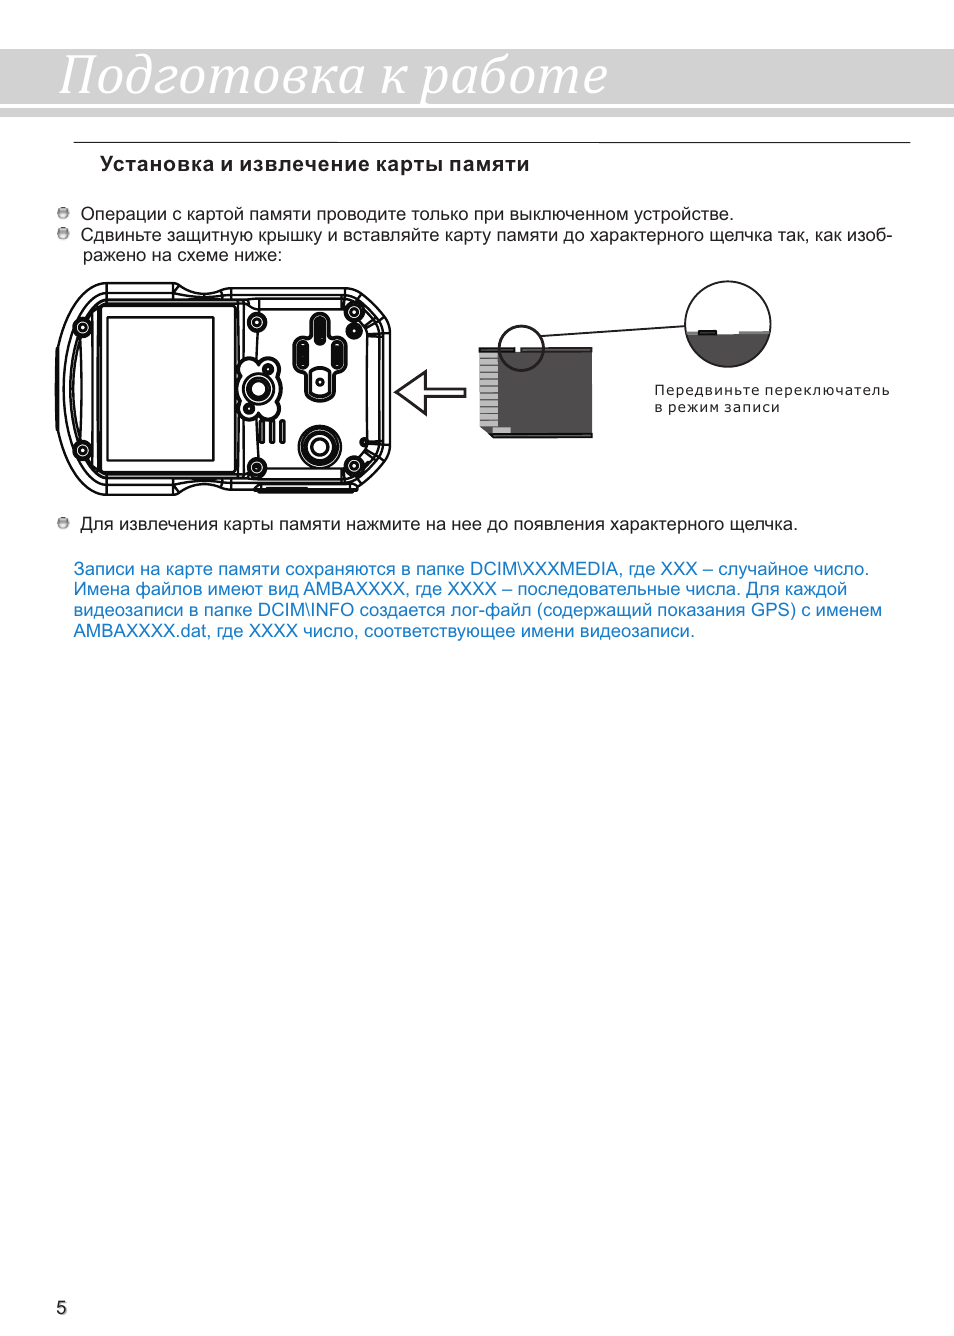 Инструкция по эксплуатации видеорегистратора каркам р2